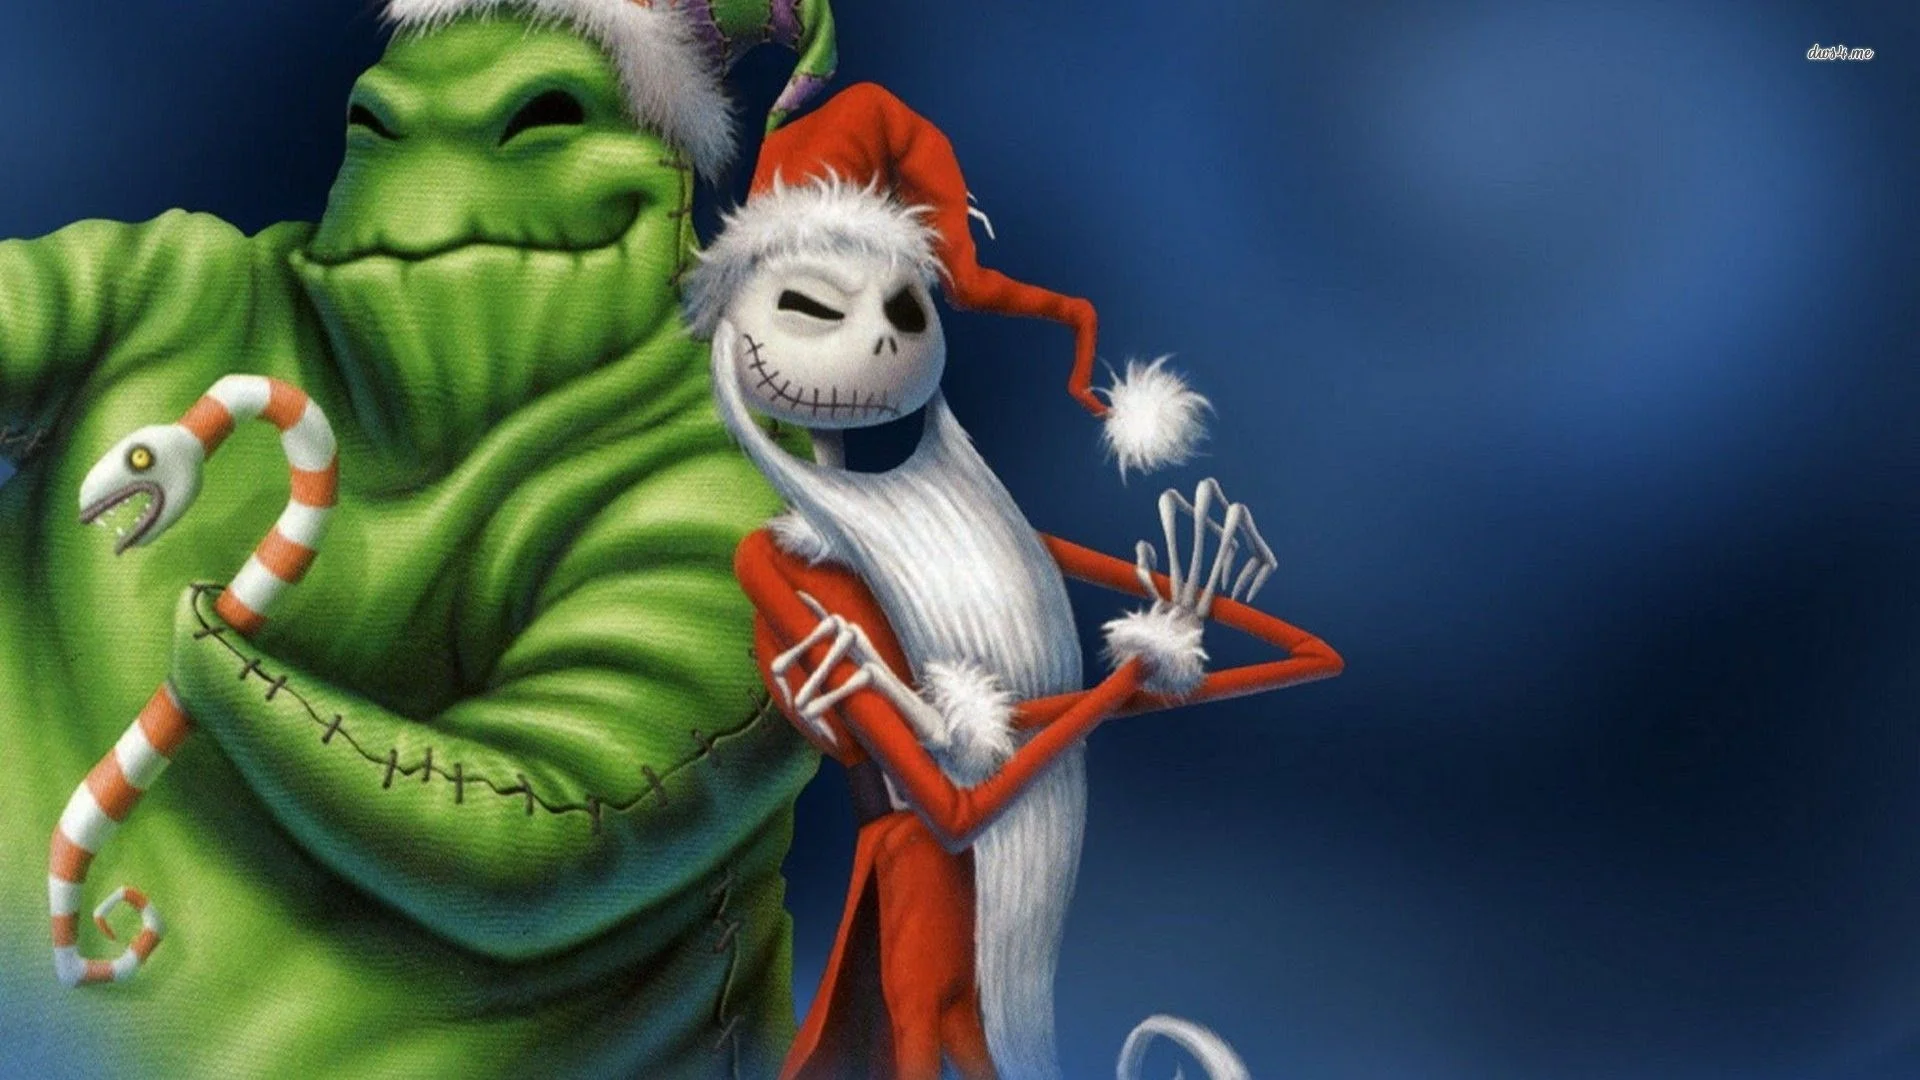 Những nhân vật hoạt hình đáng yêu trong bộ phim Dreamworks - Nightmare Before Christmas sẽ đưa bạn vào những giấc mơ kì lạ và thú vị. Xem bức ảnh và đắm chìm trong thế giới của Jack Skellington và Sally.